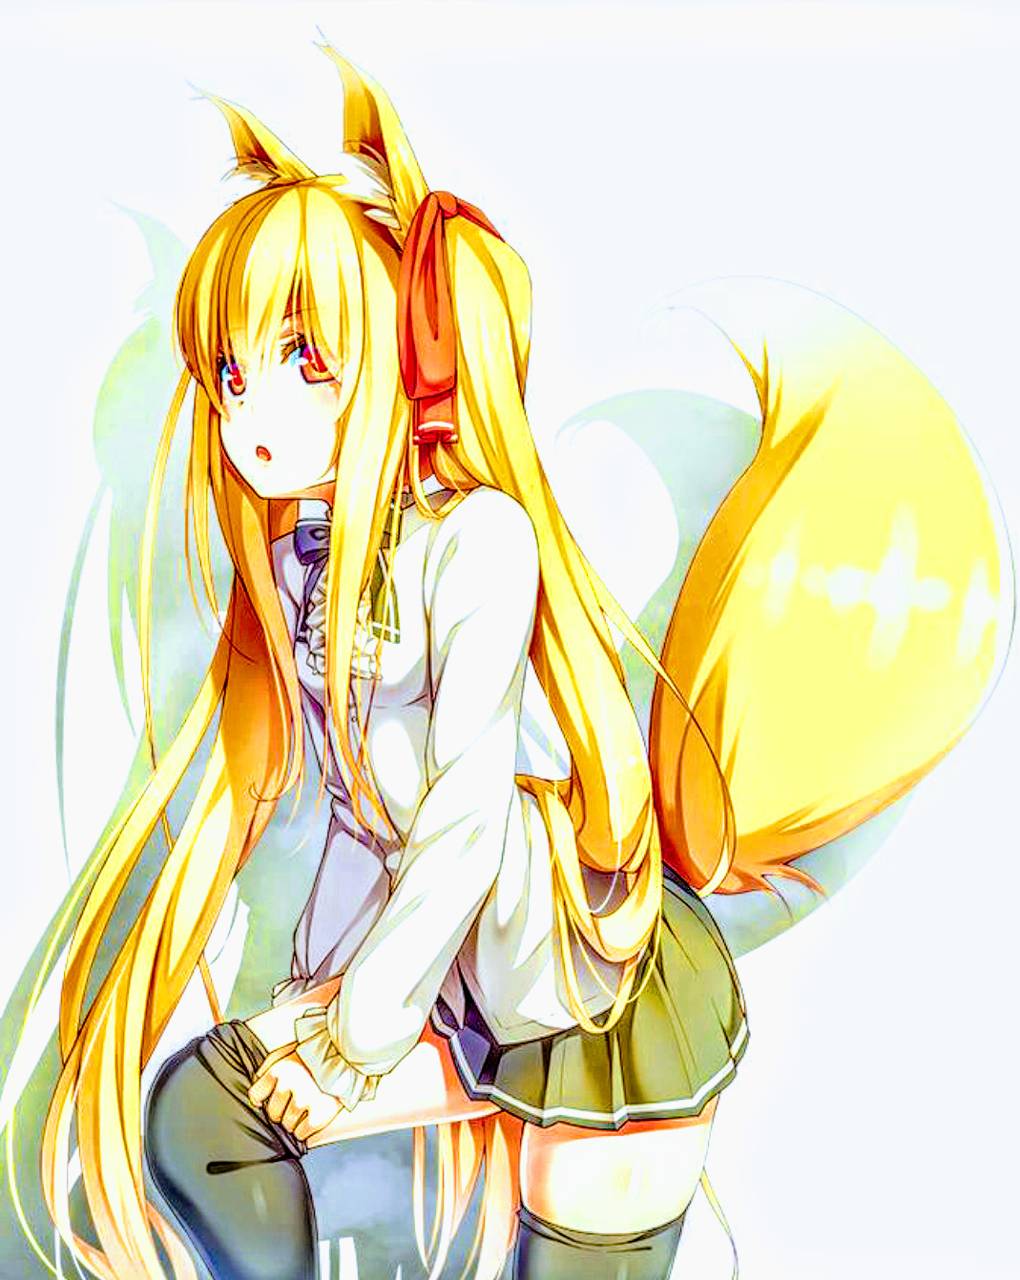 Blind fox anime girl Wallpaper